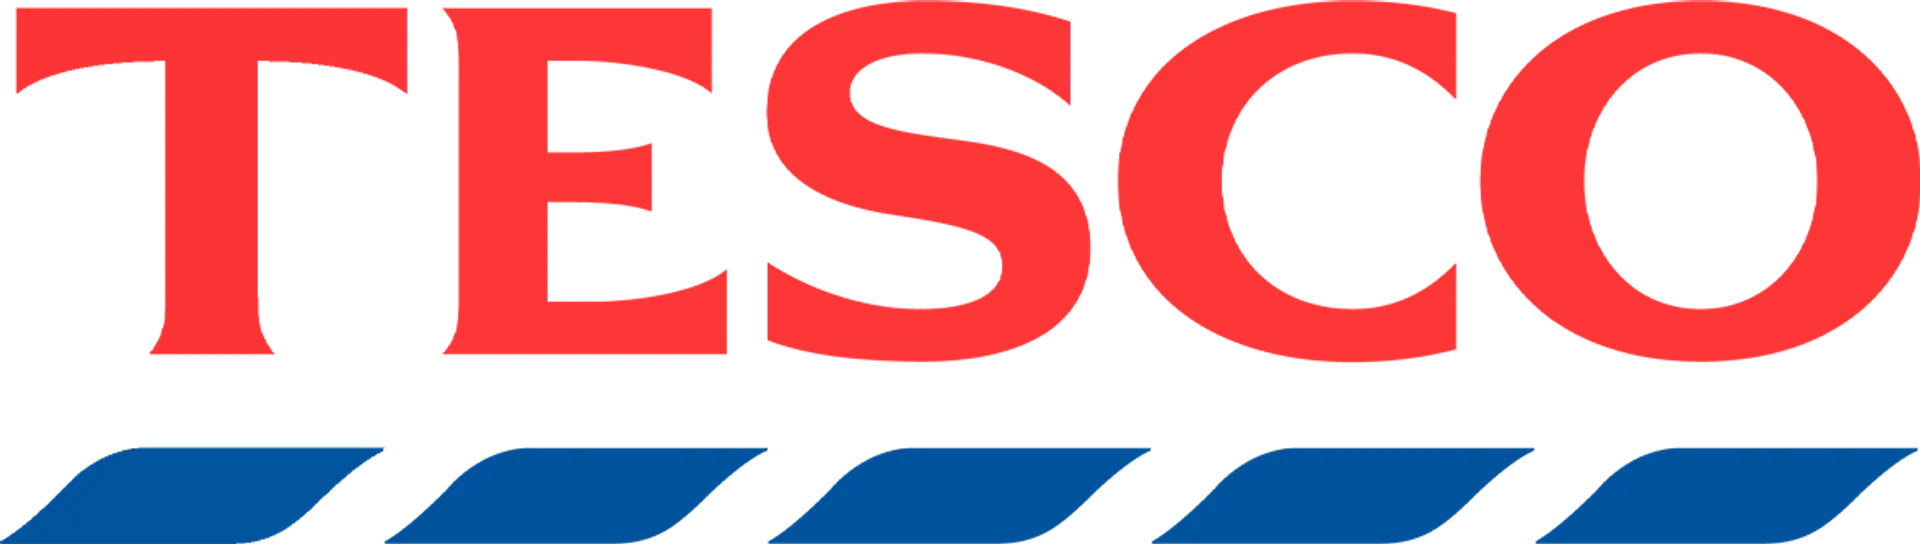 TESCO logo